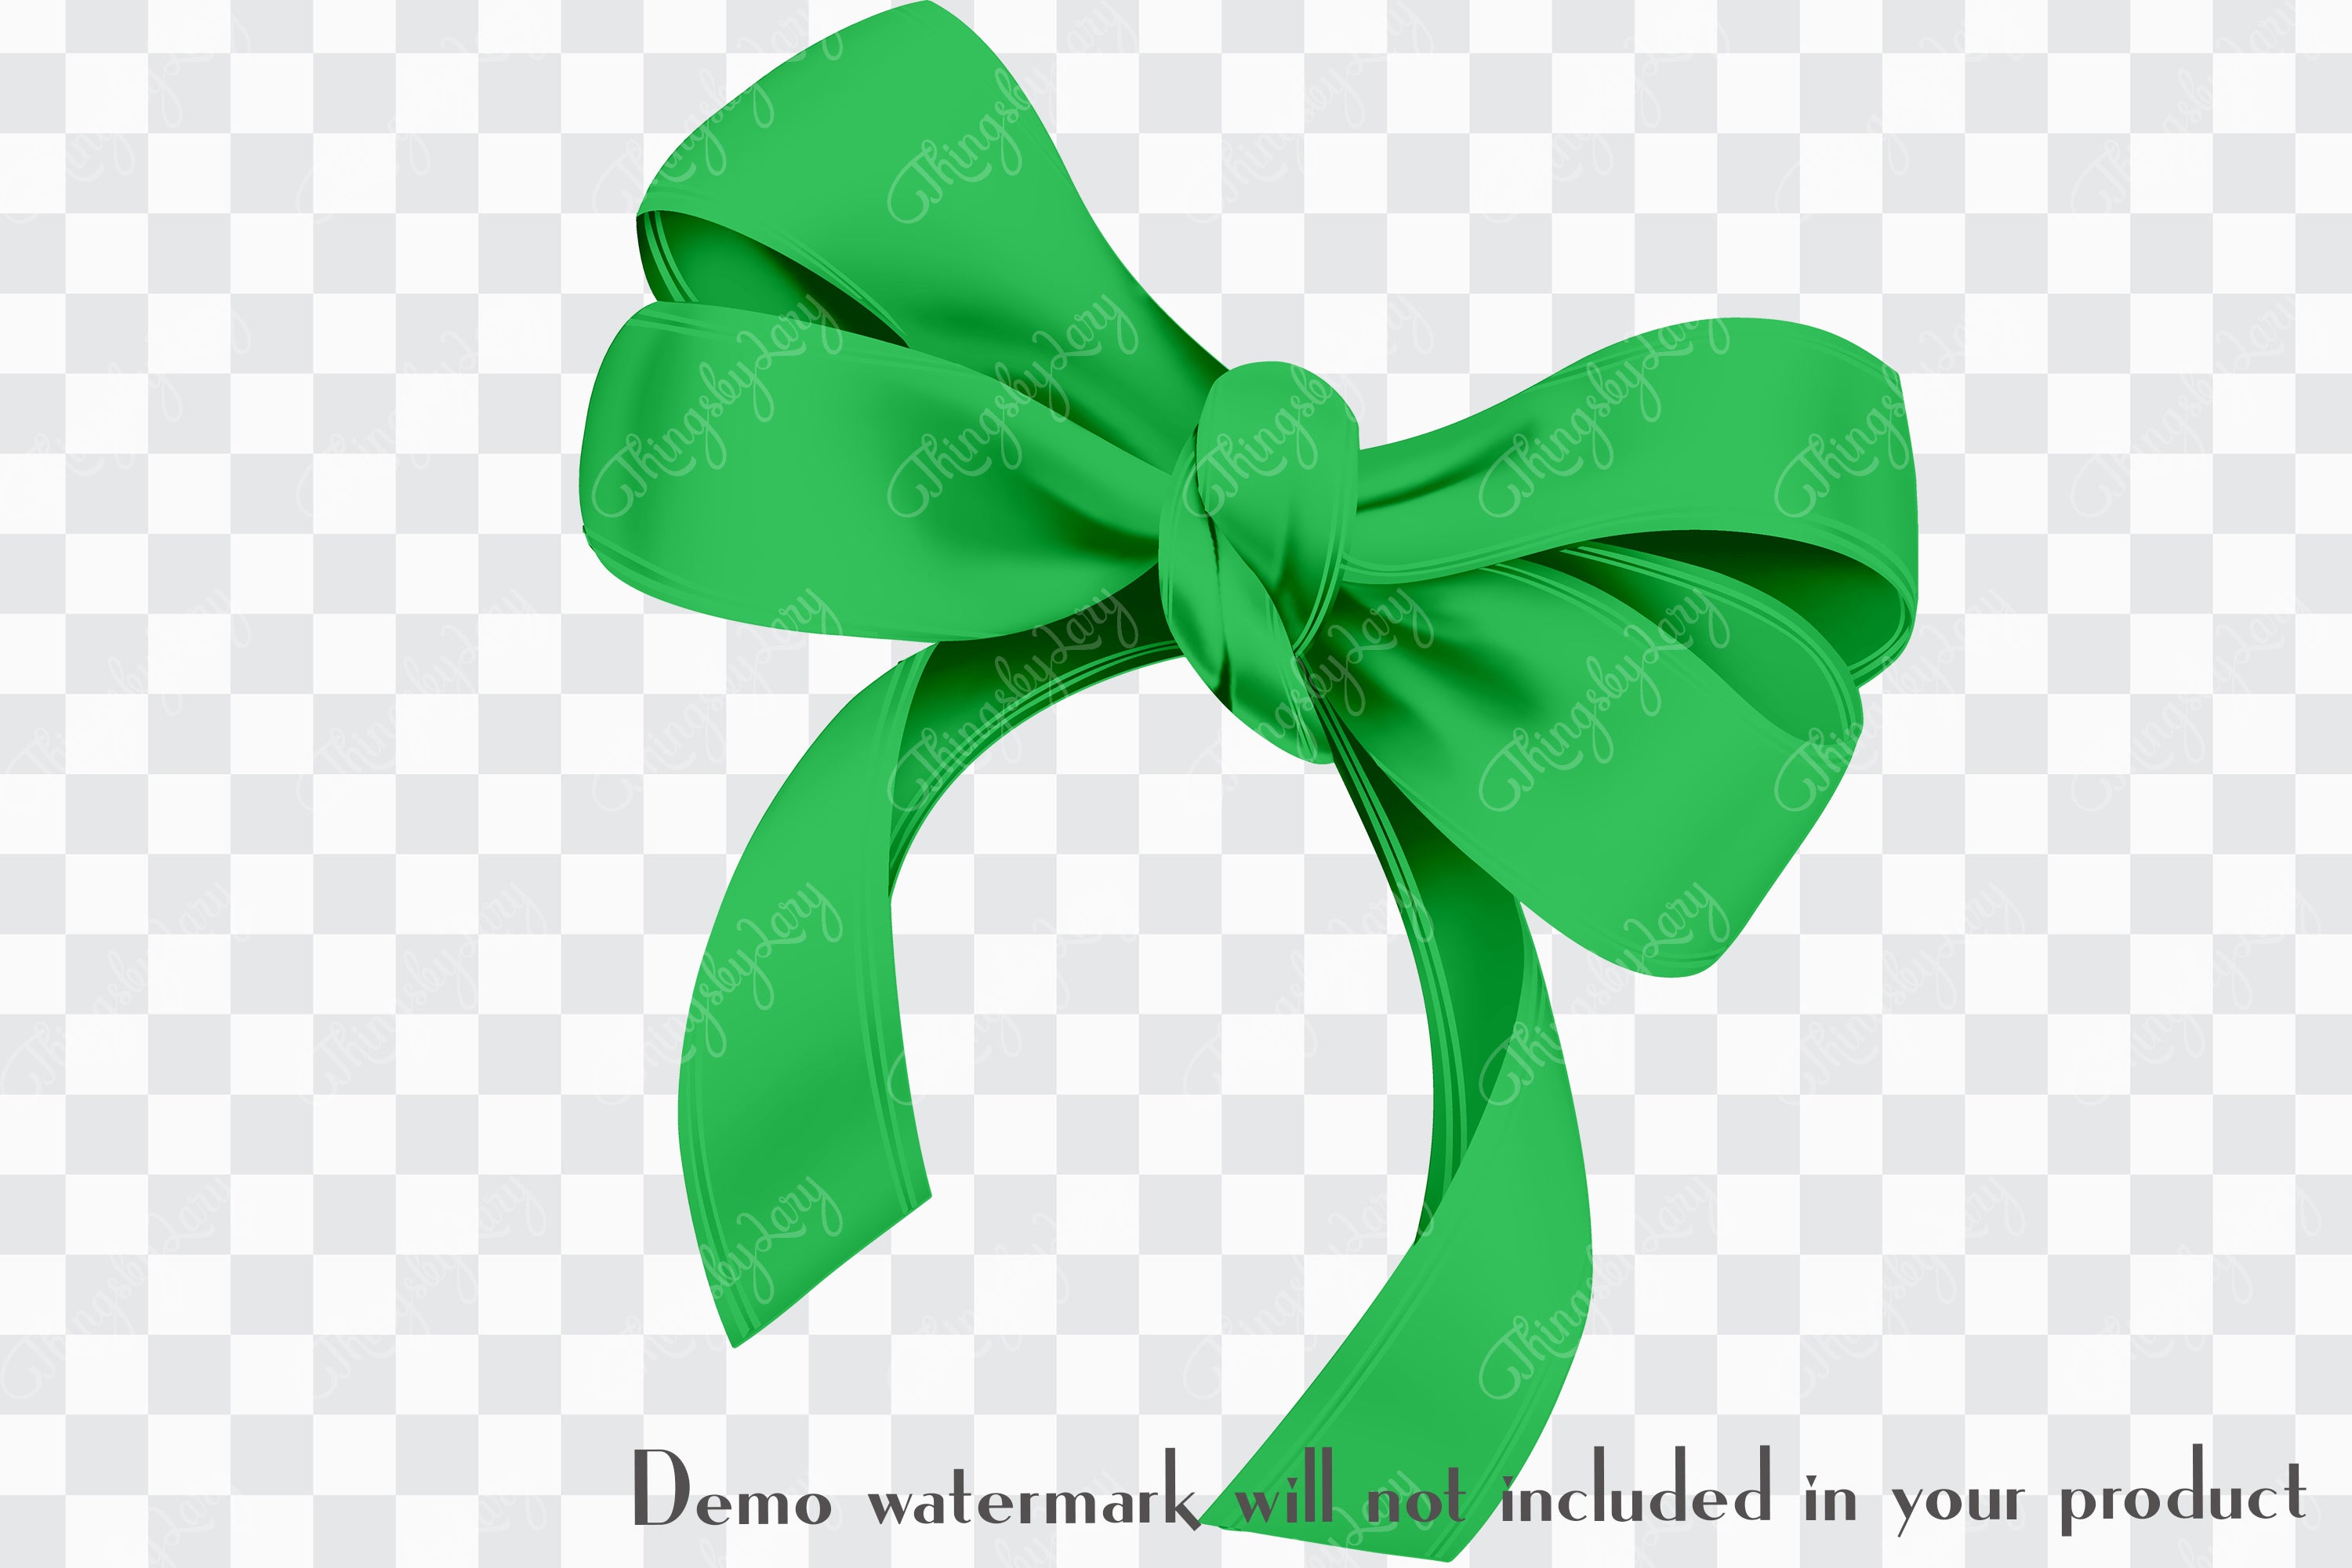 56 Green Satin Bows and Ribbons Digital Images